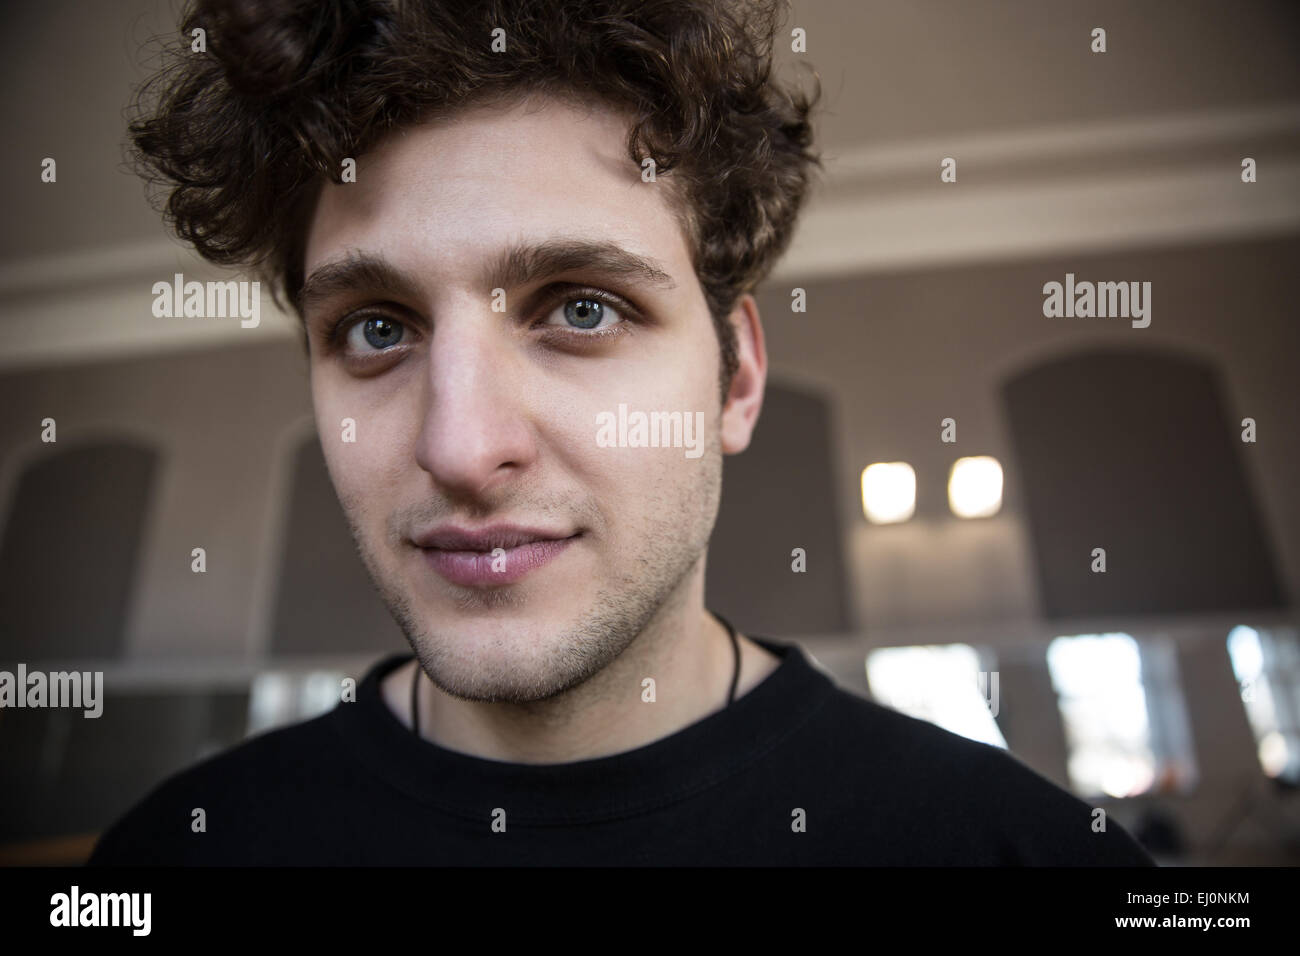 Portrait d'un bel homme avec des cheveux bouclés looking at camera Banque D'Images